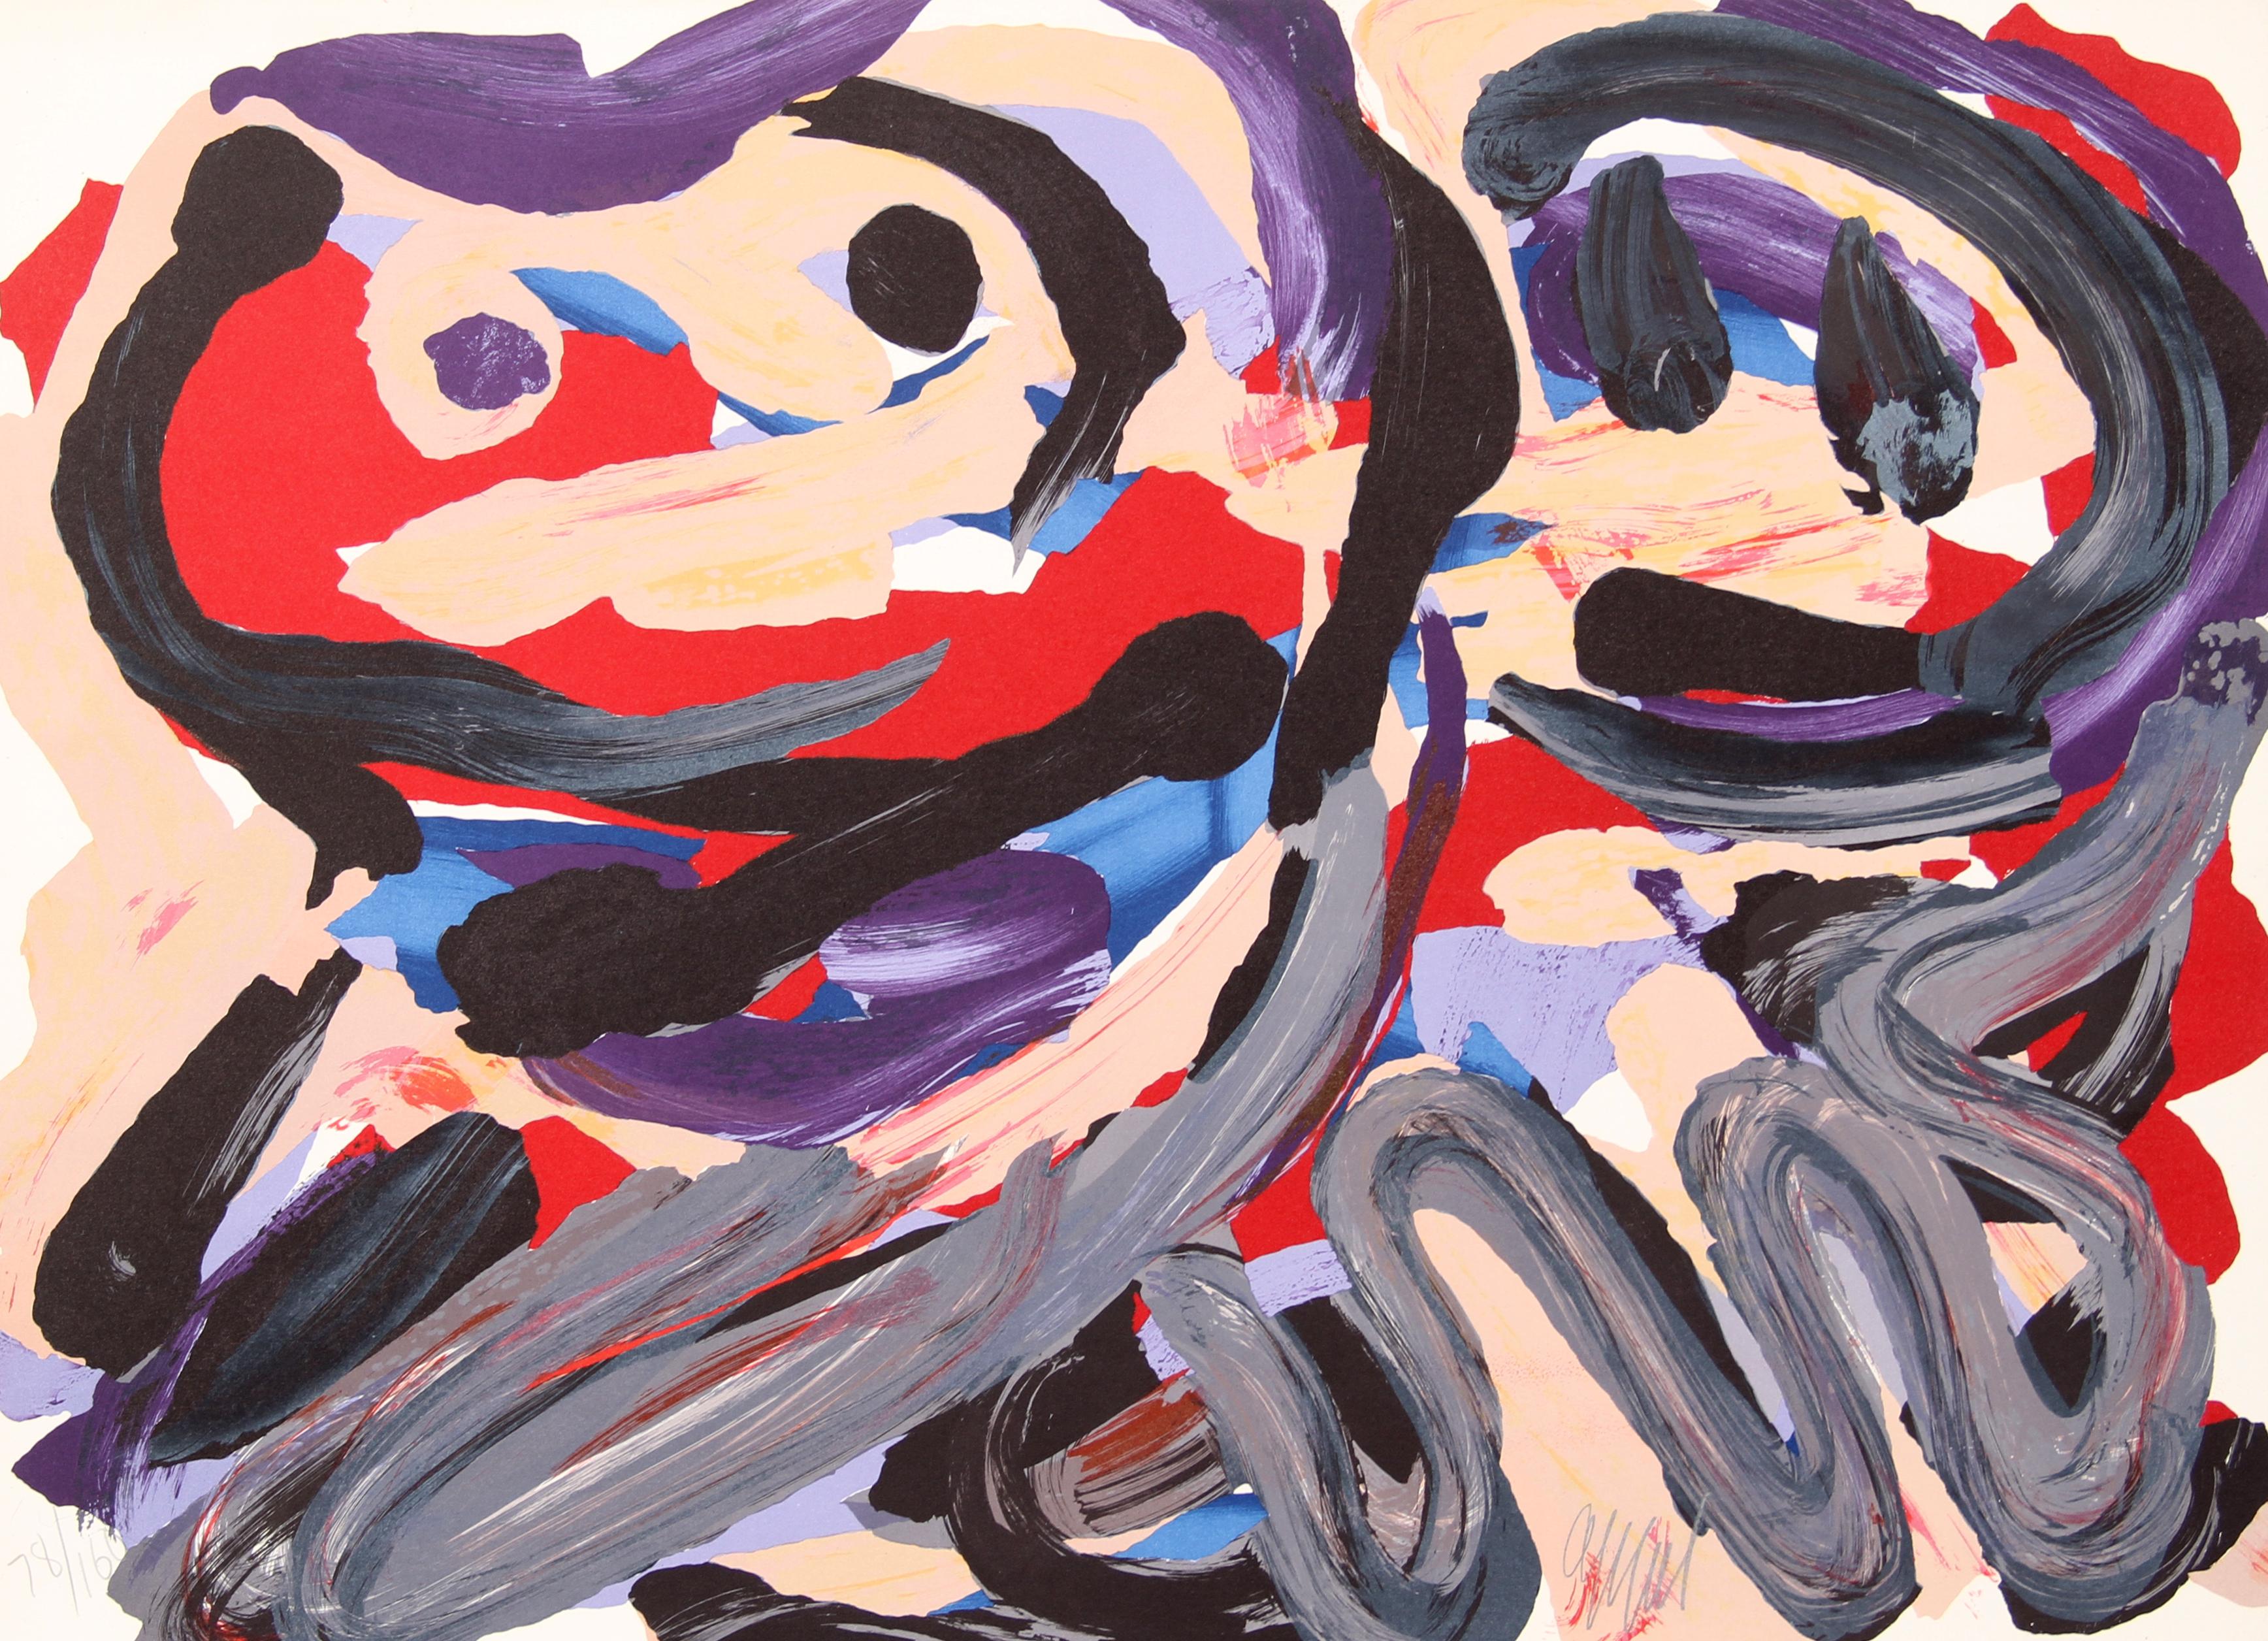 Lithographie expressionniste abstraite de Karel Appel datant de 1979.

Happy Battle
Karel Appel, néerlandais (1921-2006)
Date : 1979
Lithographie sur Arches, Signé et numéroté au crayon
Edition de 160, HC
Taille : 21,5 in. x 29,5 in. (54,61 cm x